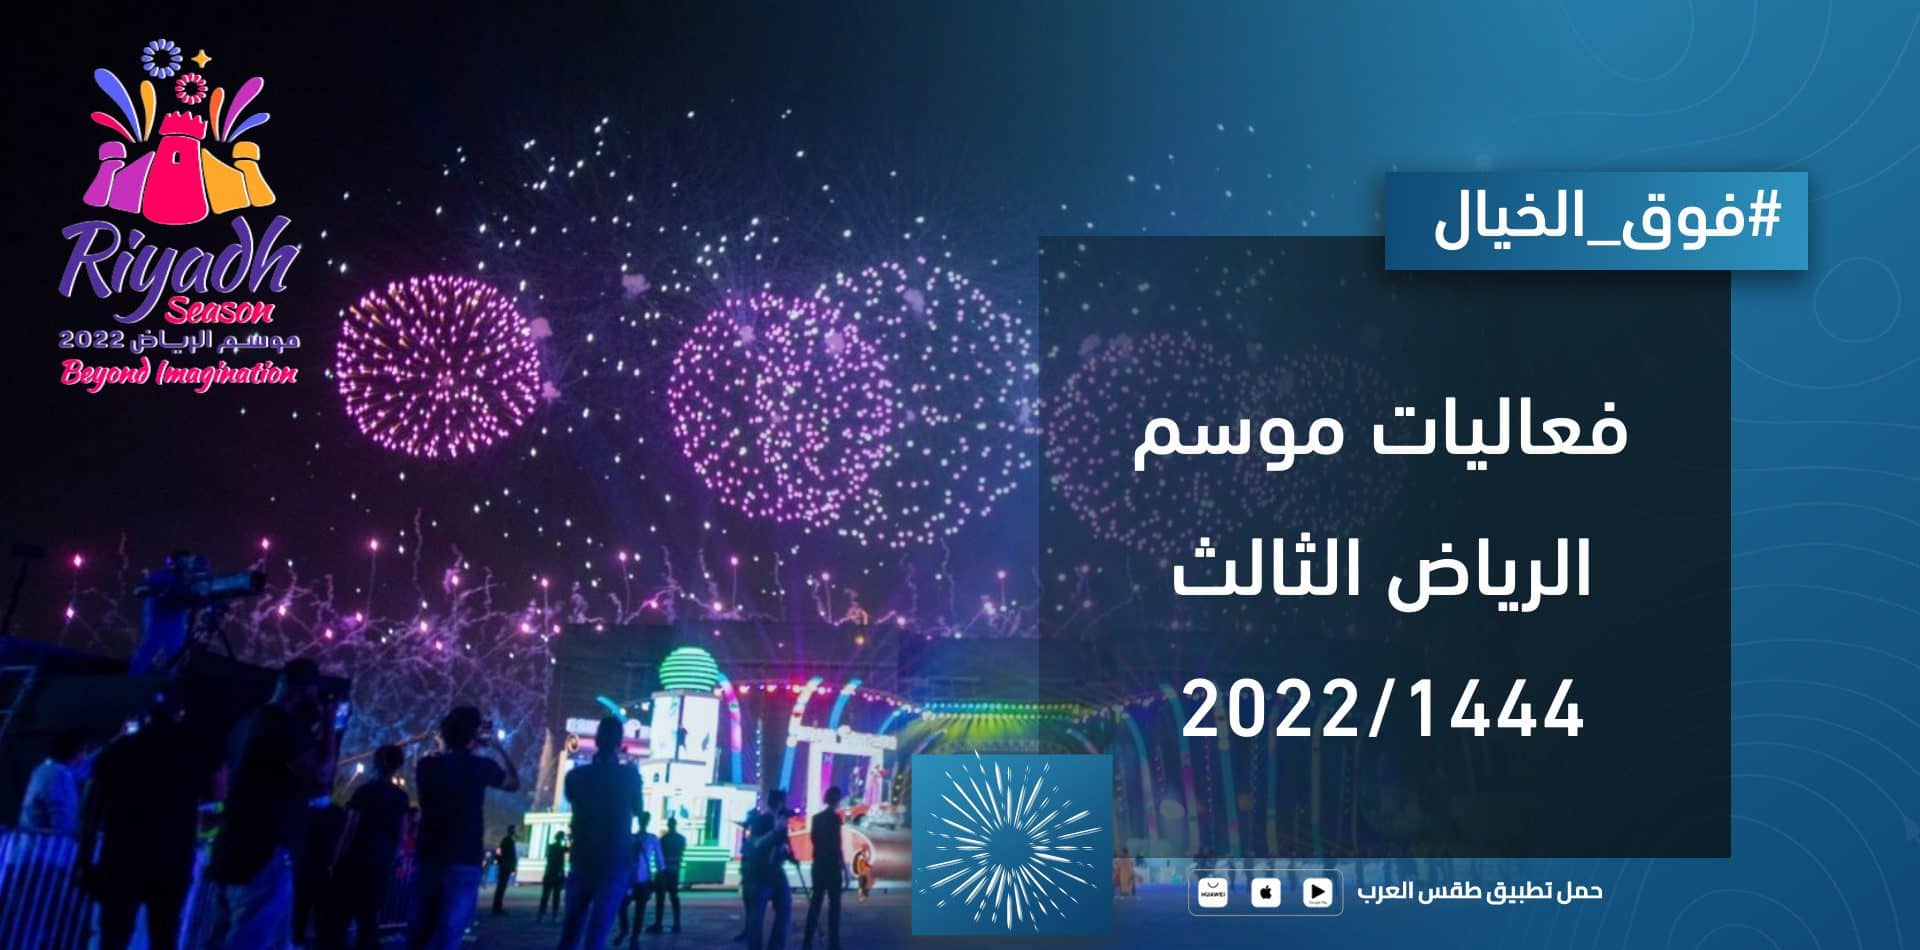 “فوق الخيال” .. مواقع فعاليات موسم الرياض 2022 في المملكة العربية السعودية